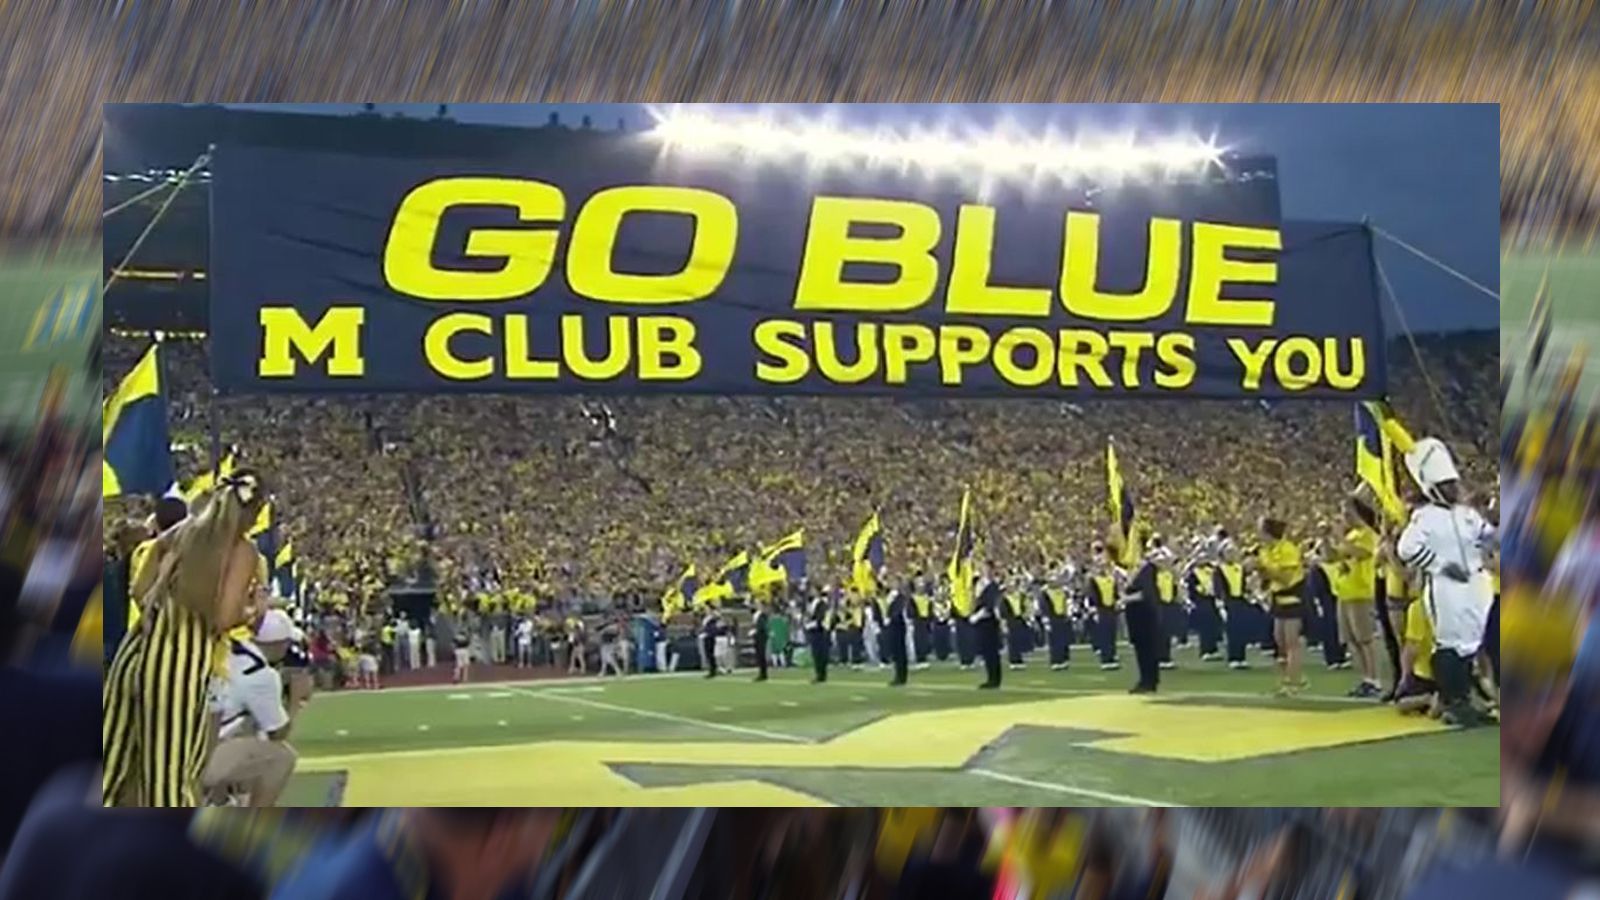 
                <strong>Go-Blue-Banner</strong><br>
                Bereits seit 1962 ist das Banner mit der Aufschrift "GO BLUE" fester Bestandteil des Einlaufs der Wolverines ins Michigan Stadium. Die Absolventen der Universität, der "M" Club, zeigte das Banner zum ersten Mal beim Spiel gegen Illinois und seither durchlaufen die Spieler beim Einmarsch das Banner und berühren es traditionell dabei. Das Banner wurde seit 1962 bereits zwei Mal von Unbekannten gestohlen.
              